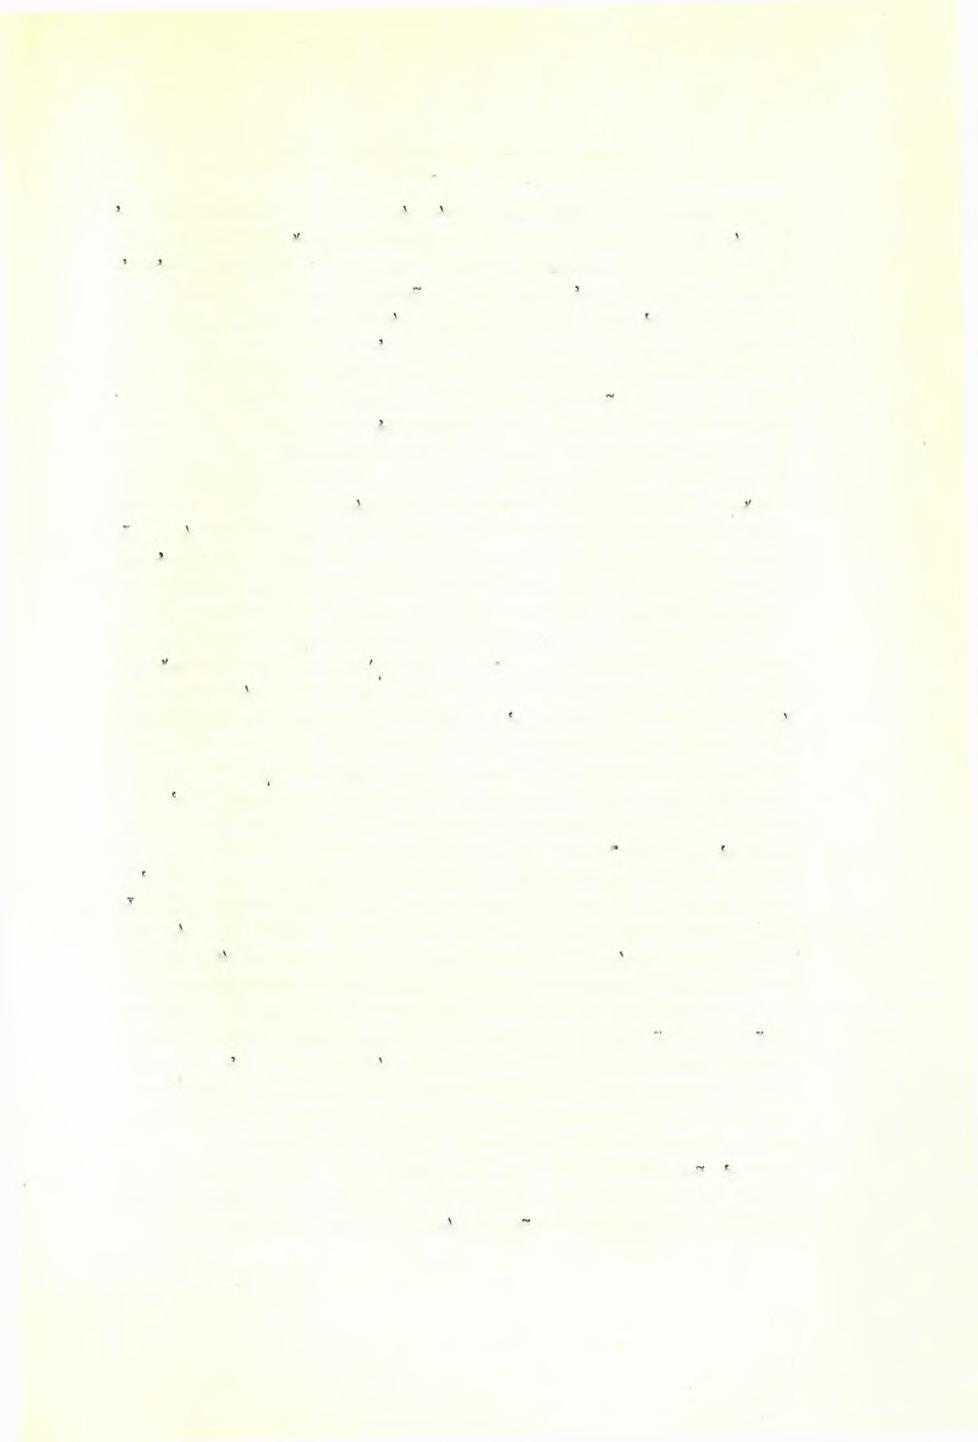 Σπυρίδωνος Μαρινάτου: Άνασκαφα'ι Πύλου 173 οχετόν 20 X 25 έκ.